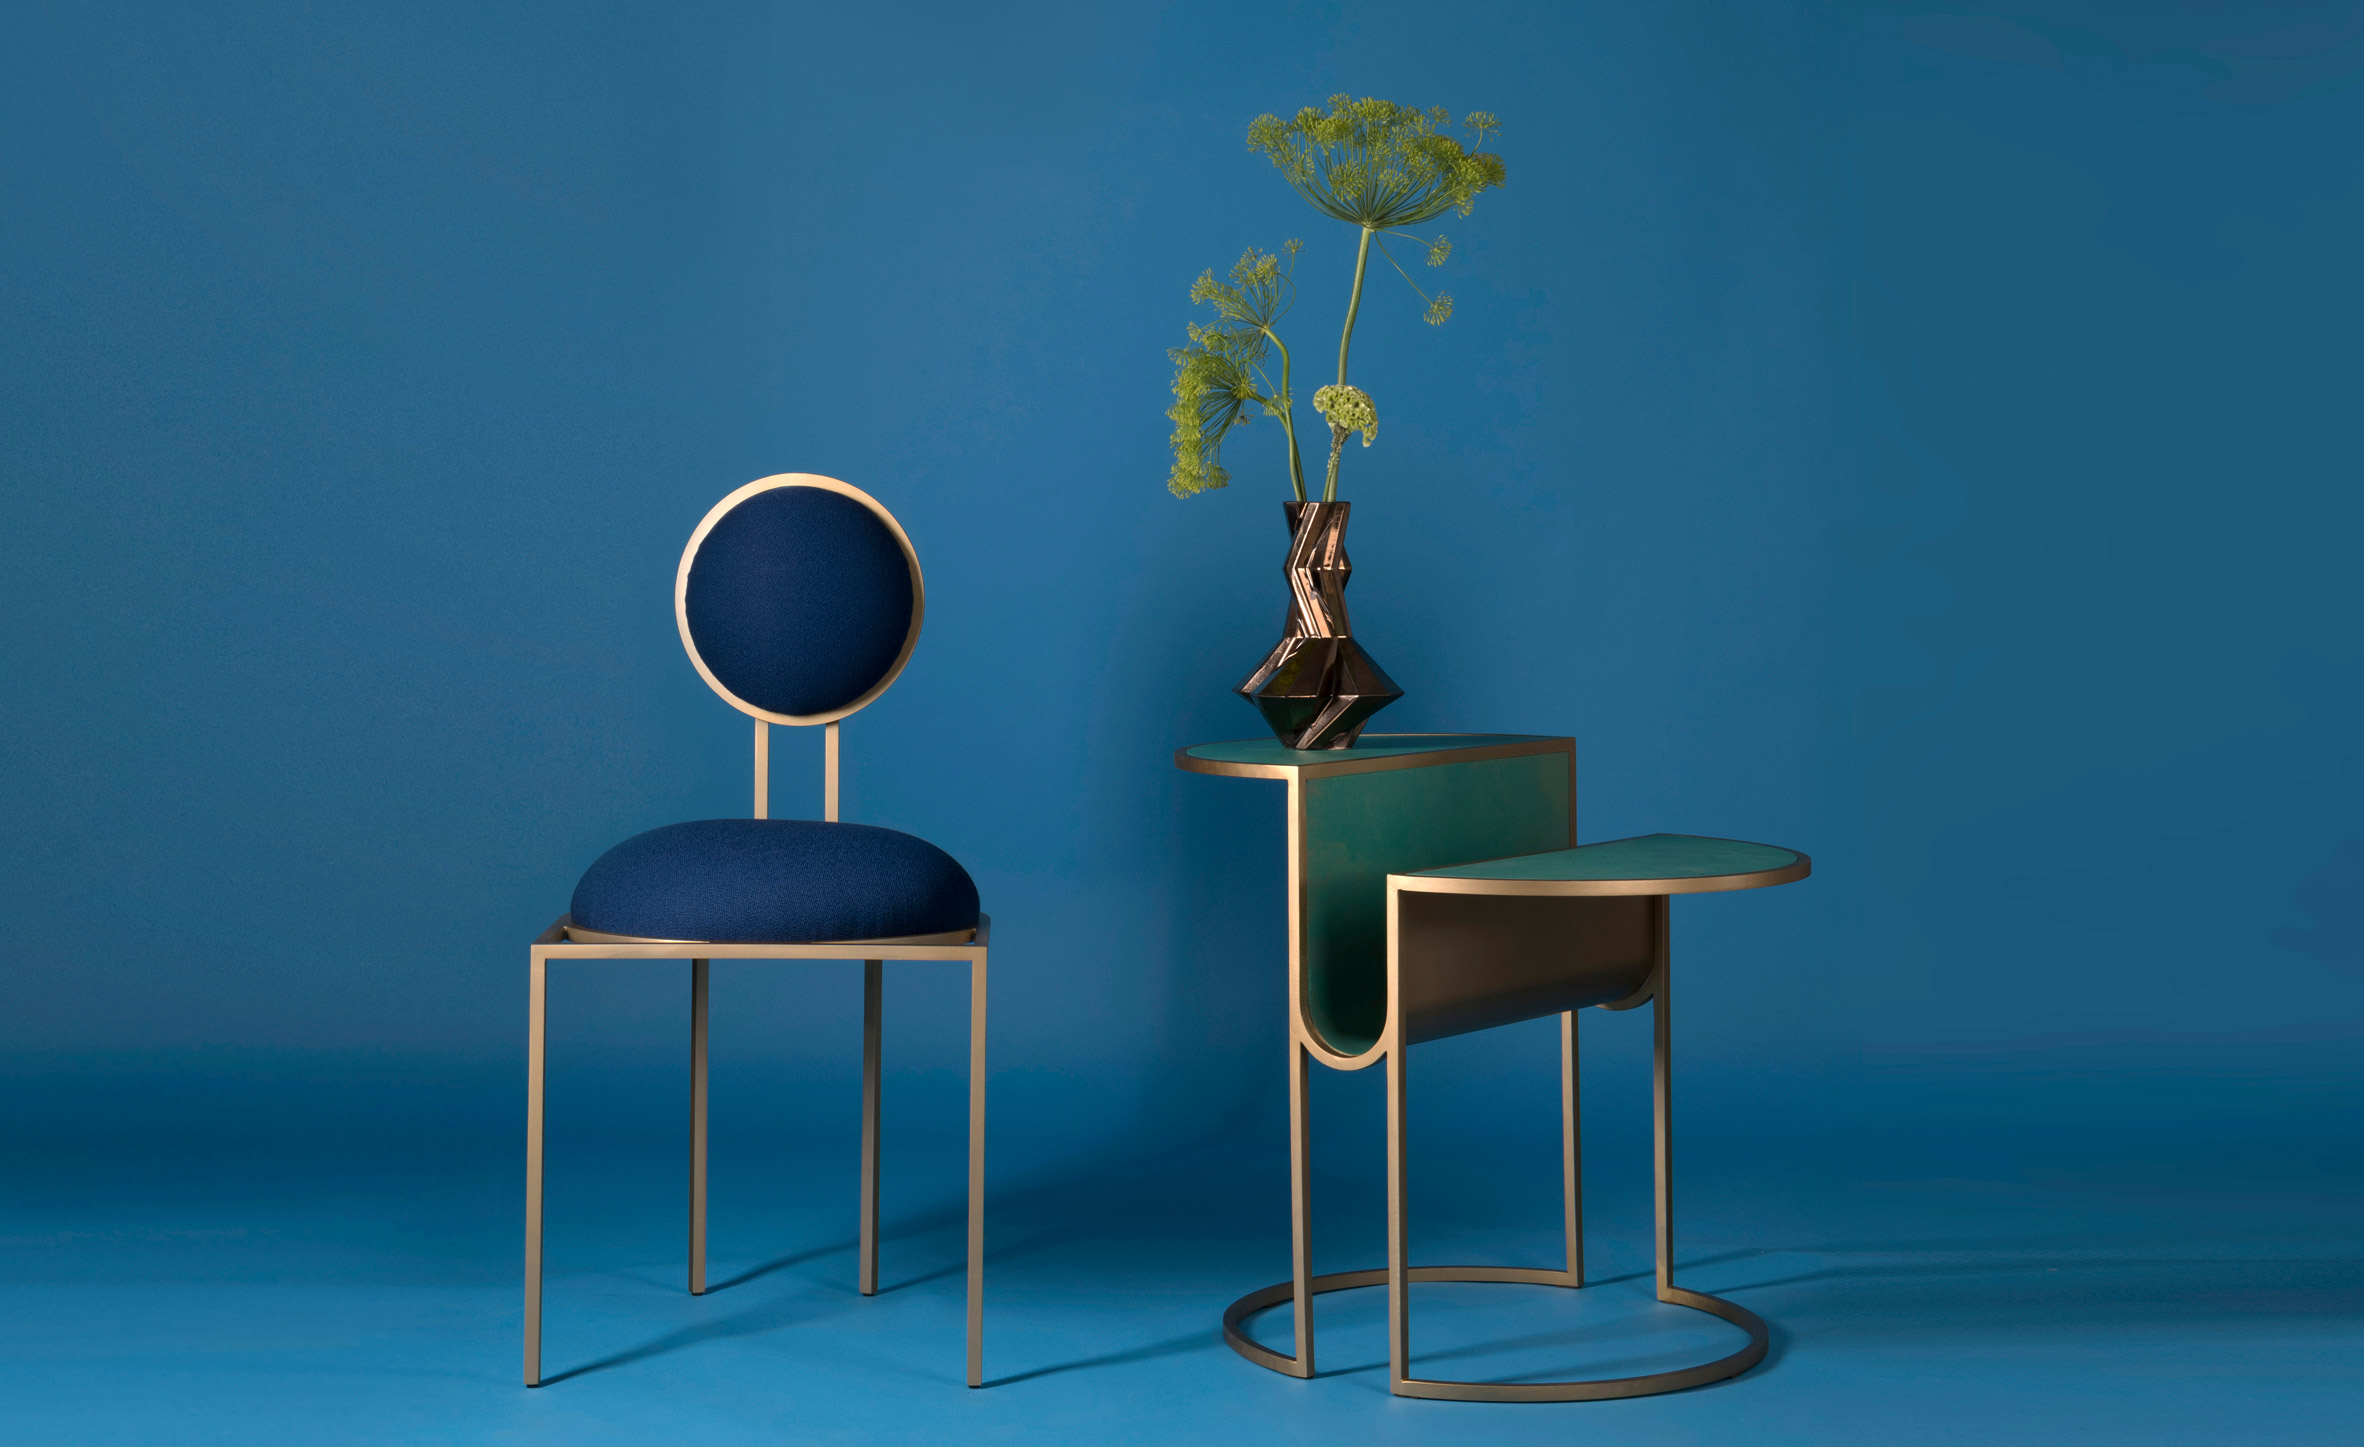 Lara Bohinc's Orbit tables express the "simplicity of Bauhaus design"